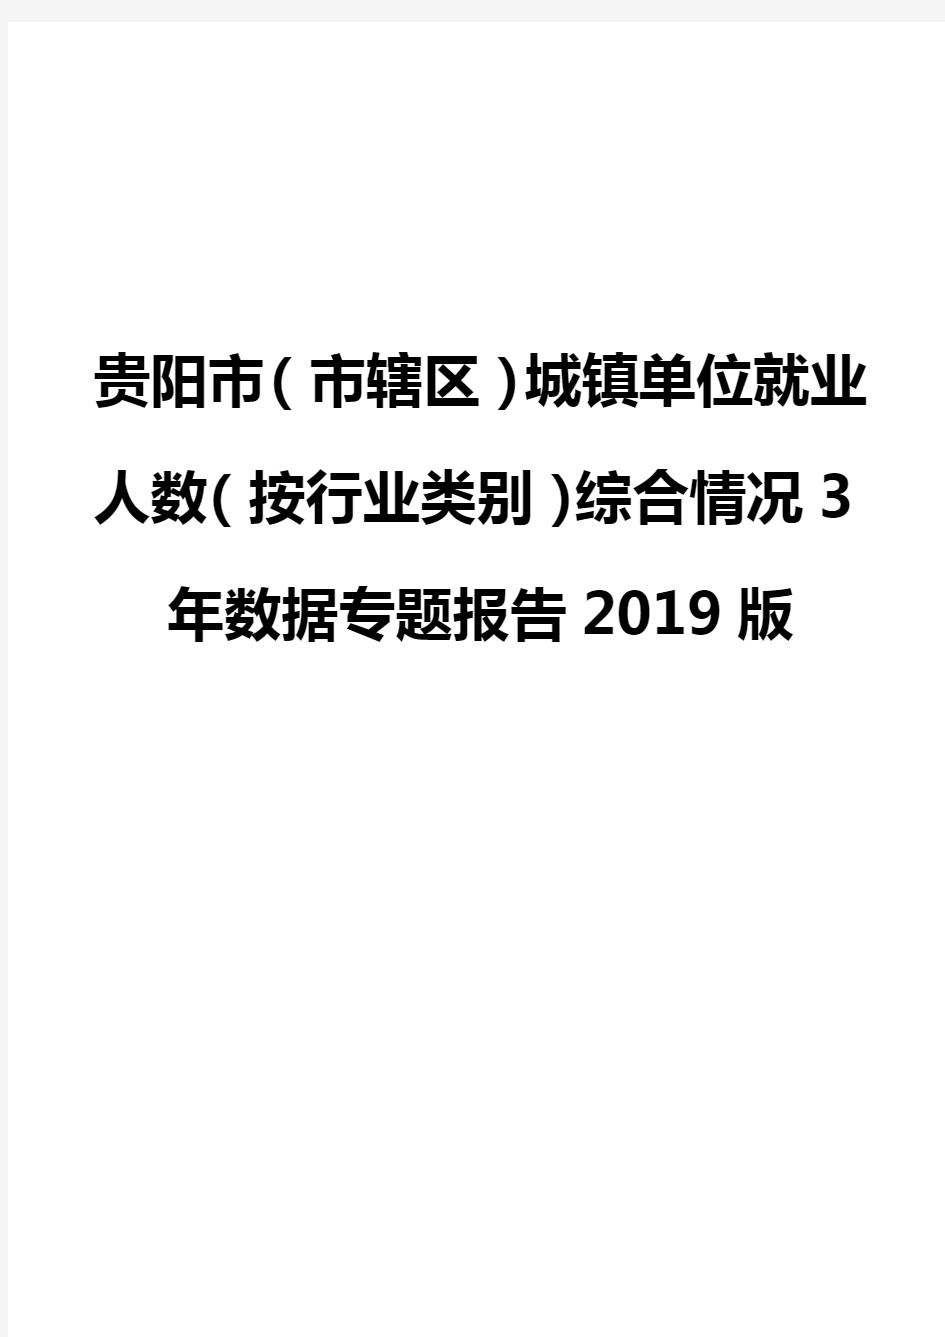 贵阳市(市辖区)城镇单位就业人数(按行业类别)综合情况3年数据专题报告2019版